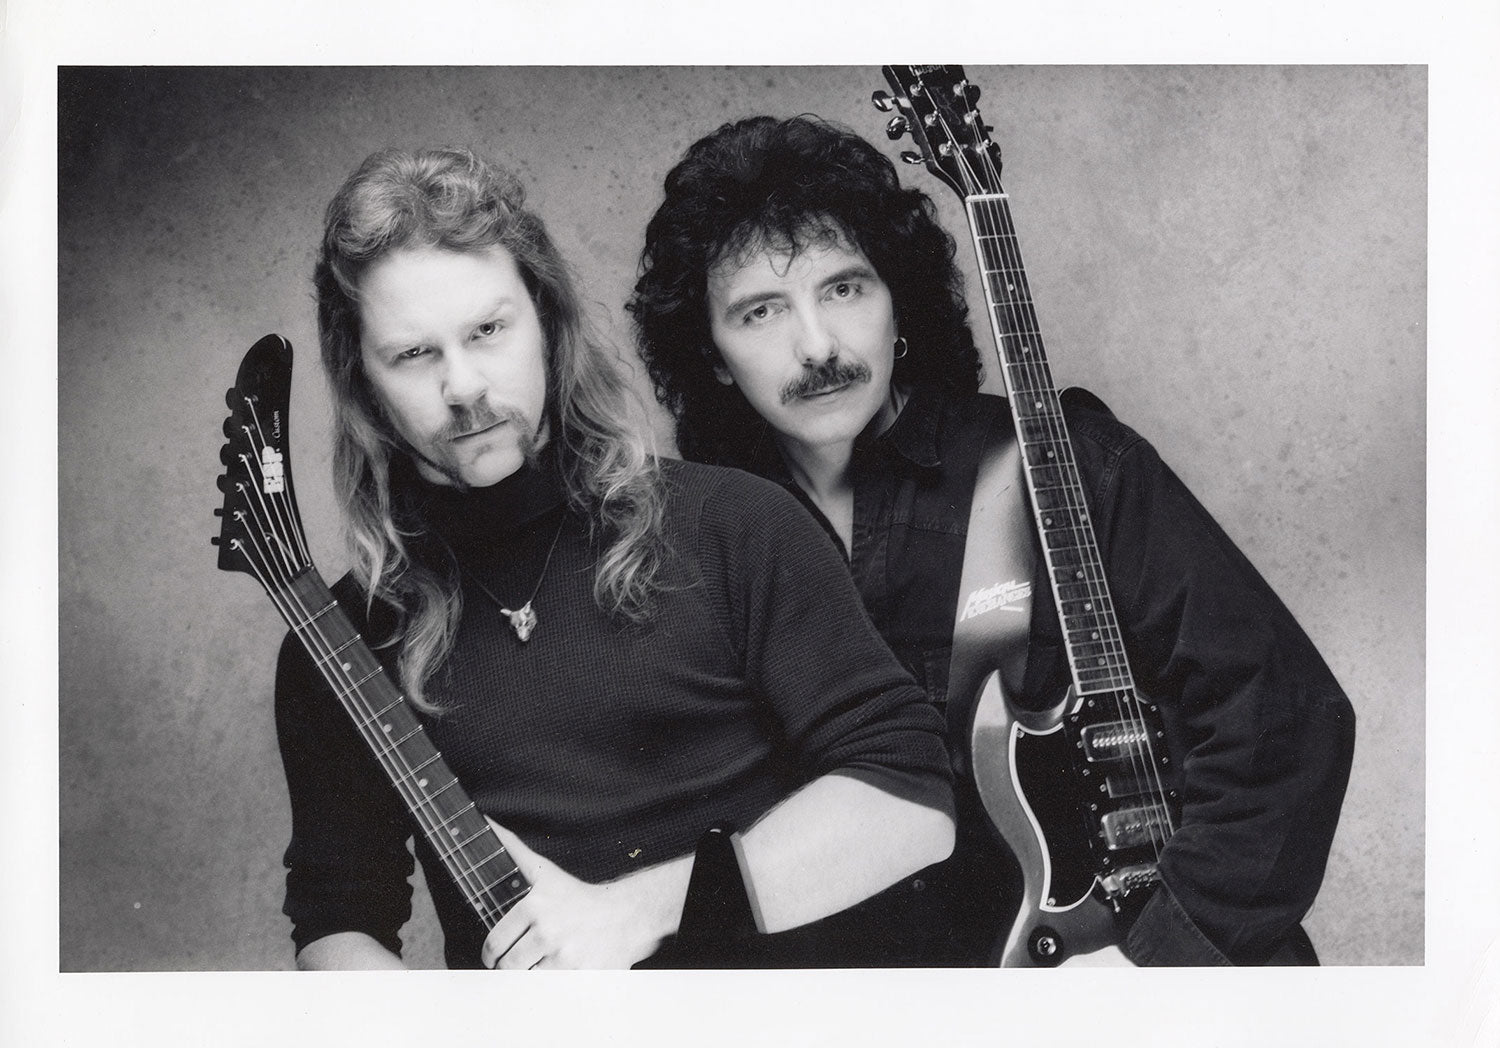 James Hetfield and Tony Iommi